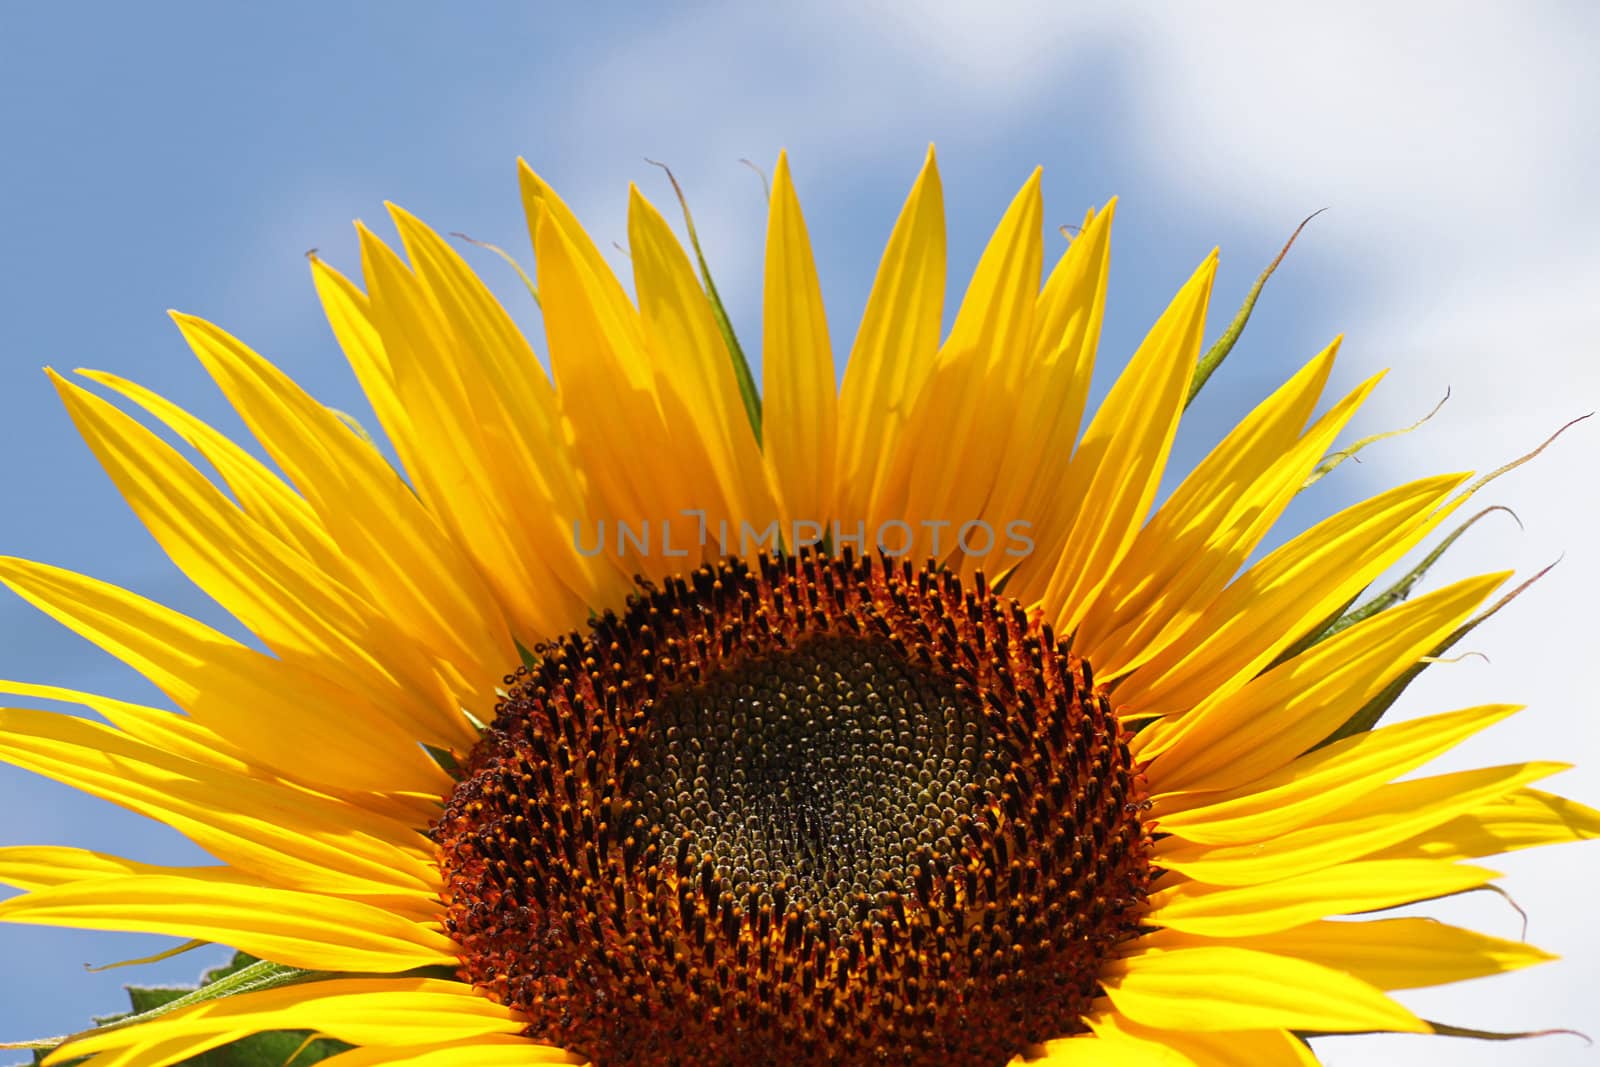 sunflower by romantiche